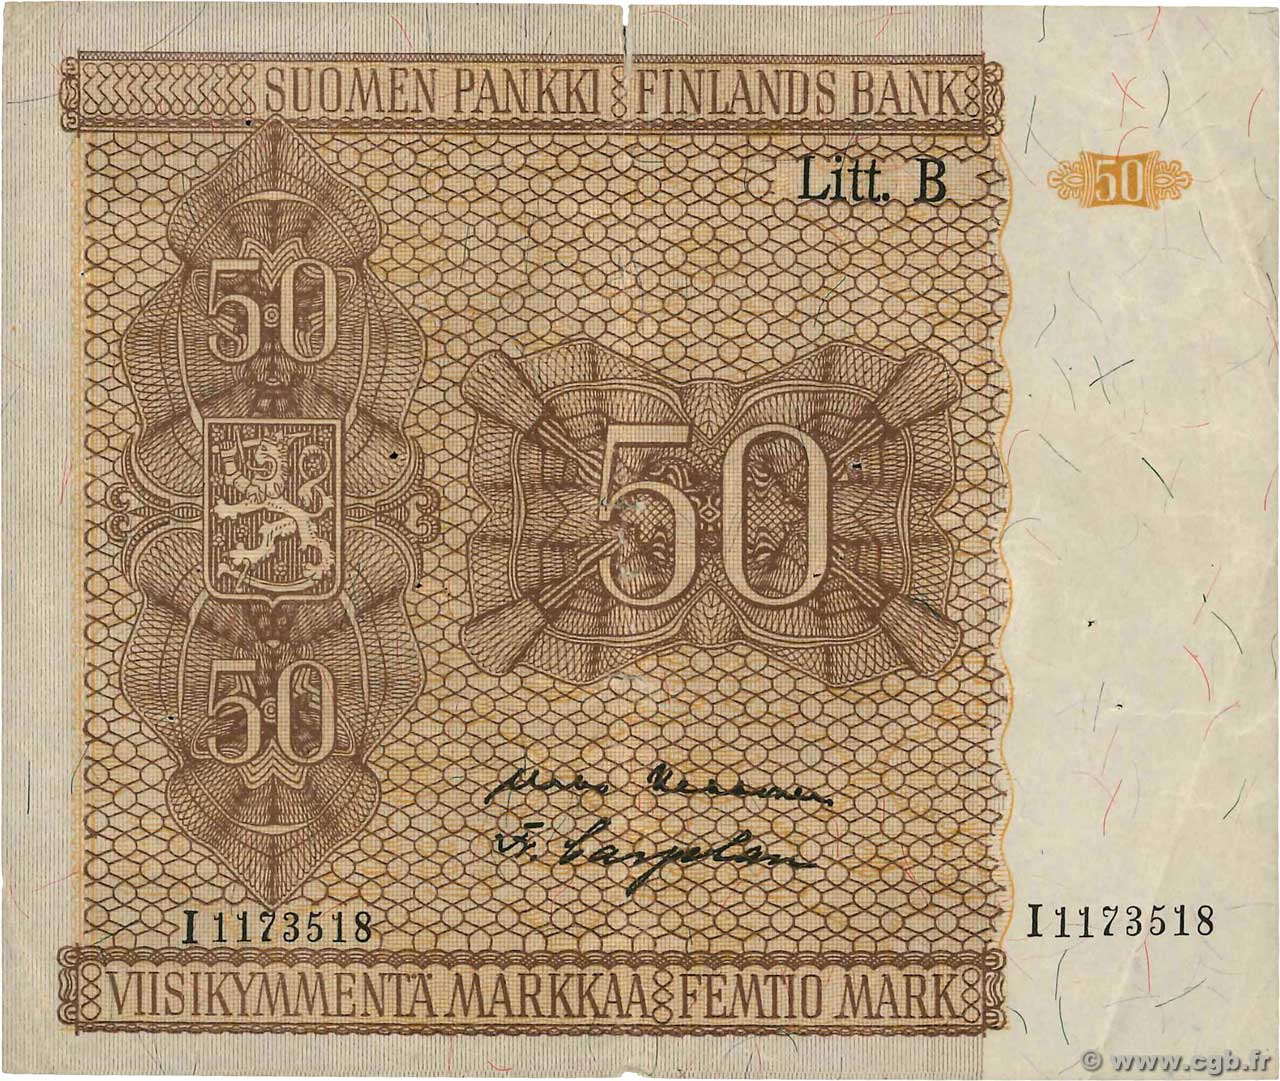 50 Markkaa FINLANDIA  1945 P.087 BB